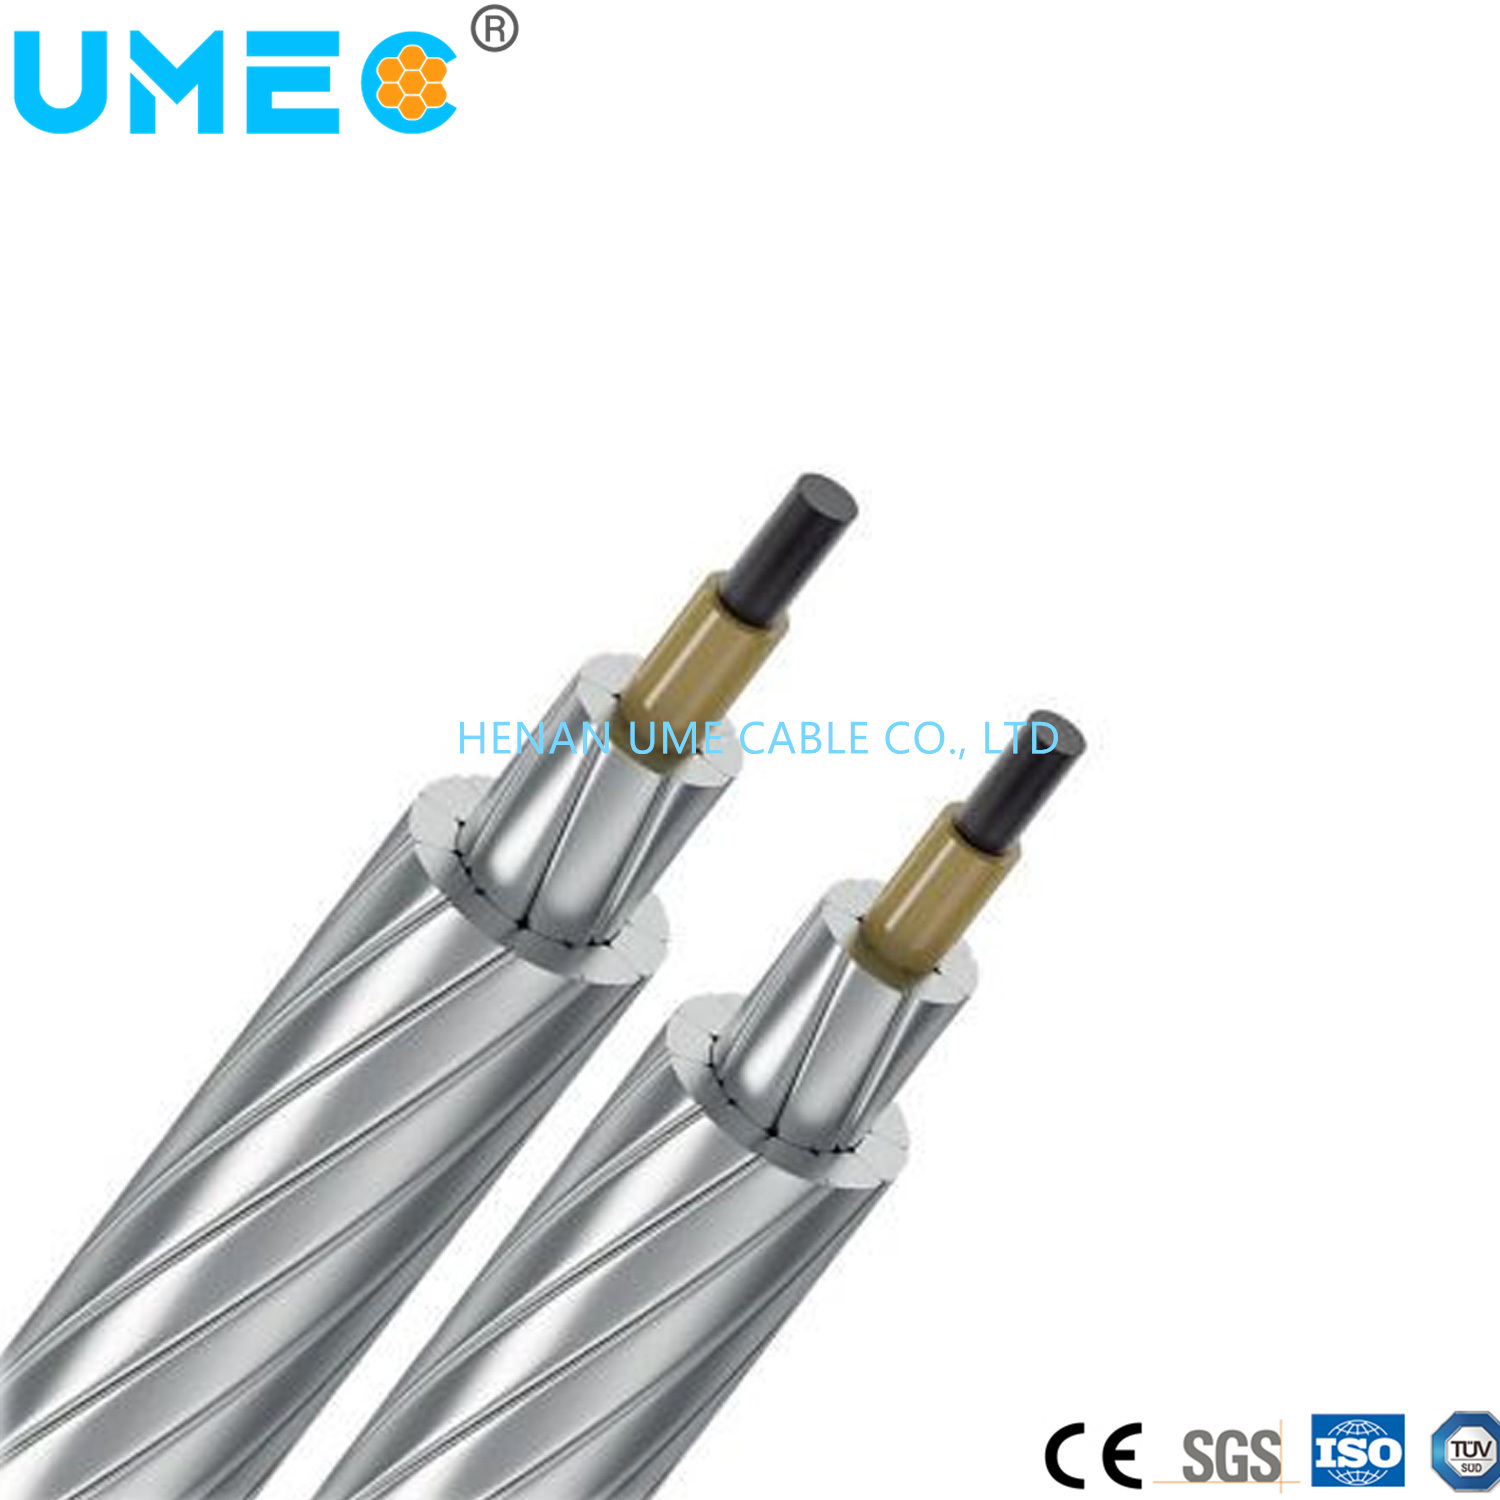 
                Accc алюминиевого провода композитного основные электрические провода неизолированные Accc алюминиевого кабеля
            